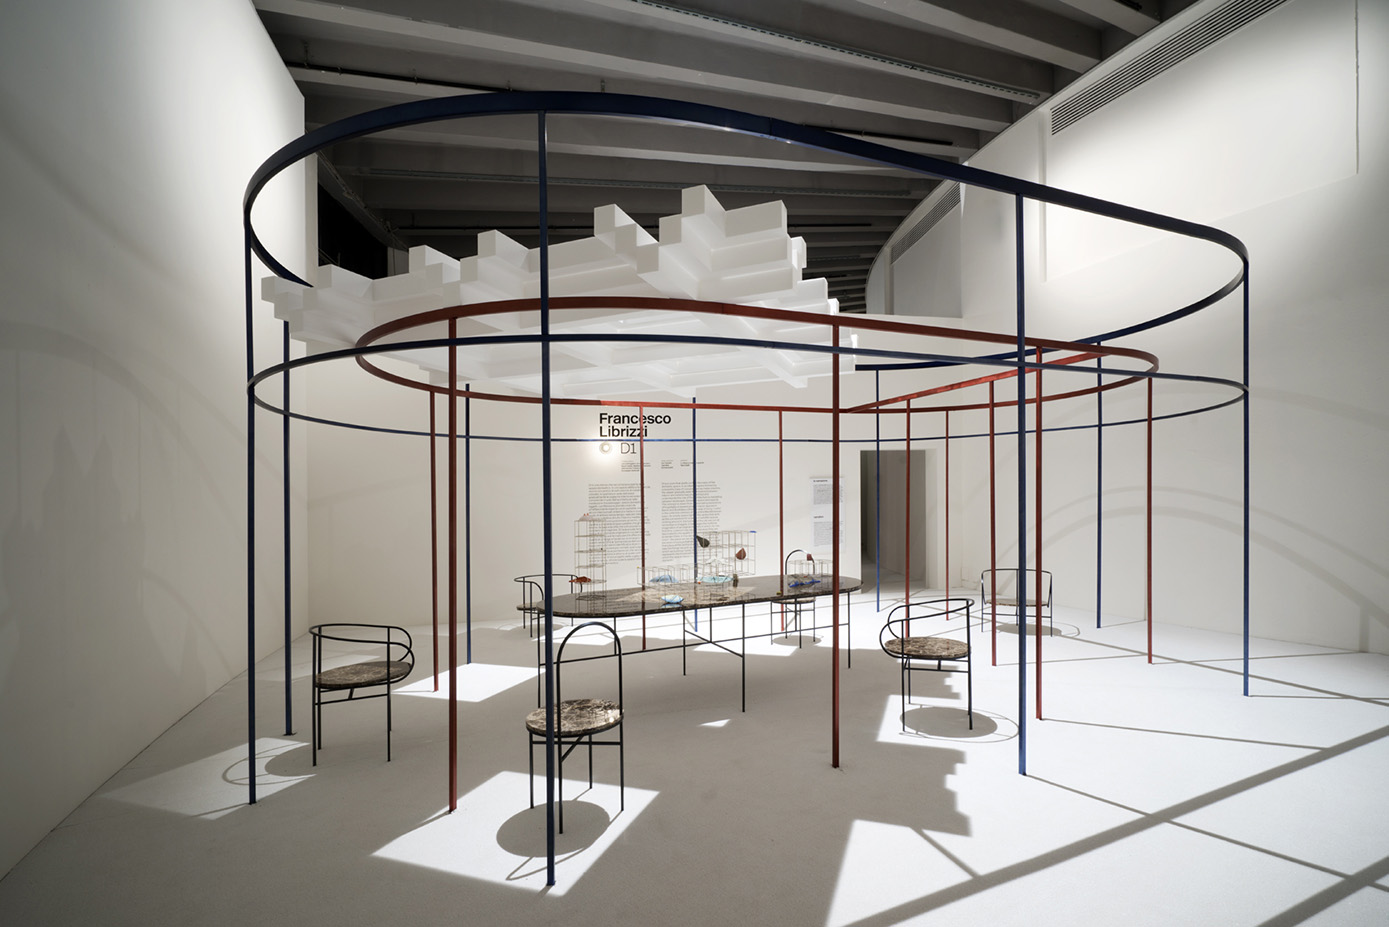 La stanza “D1” di Francesco Librizzi è uno spazio ellittico formato da recinti concentrici fatti di esili colonne di metallo colorato, un modo di raccontare la scoperta dello spazio domestico e il ruolo dell’architettura di mediazione tra paesaggio, spazio domestico e oggetti.